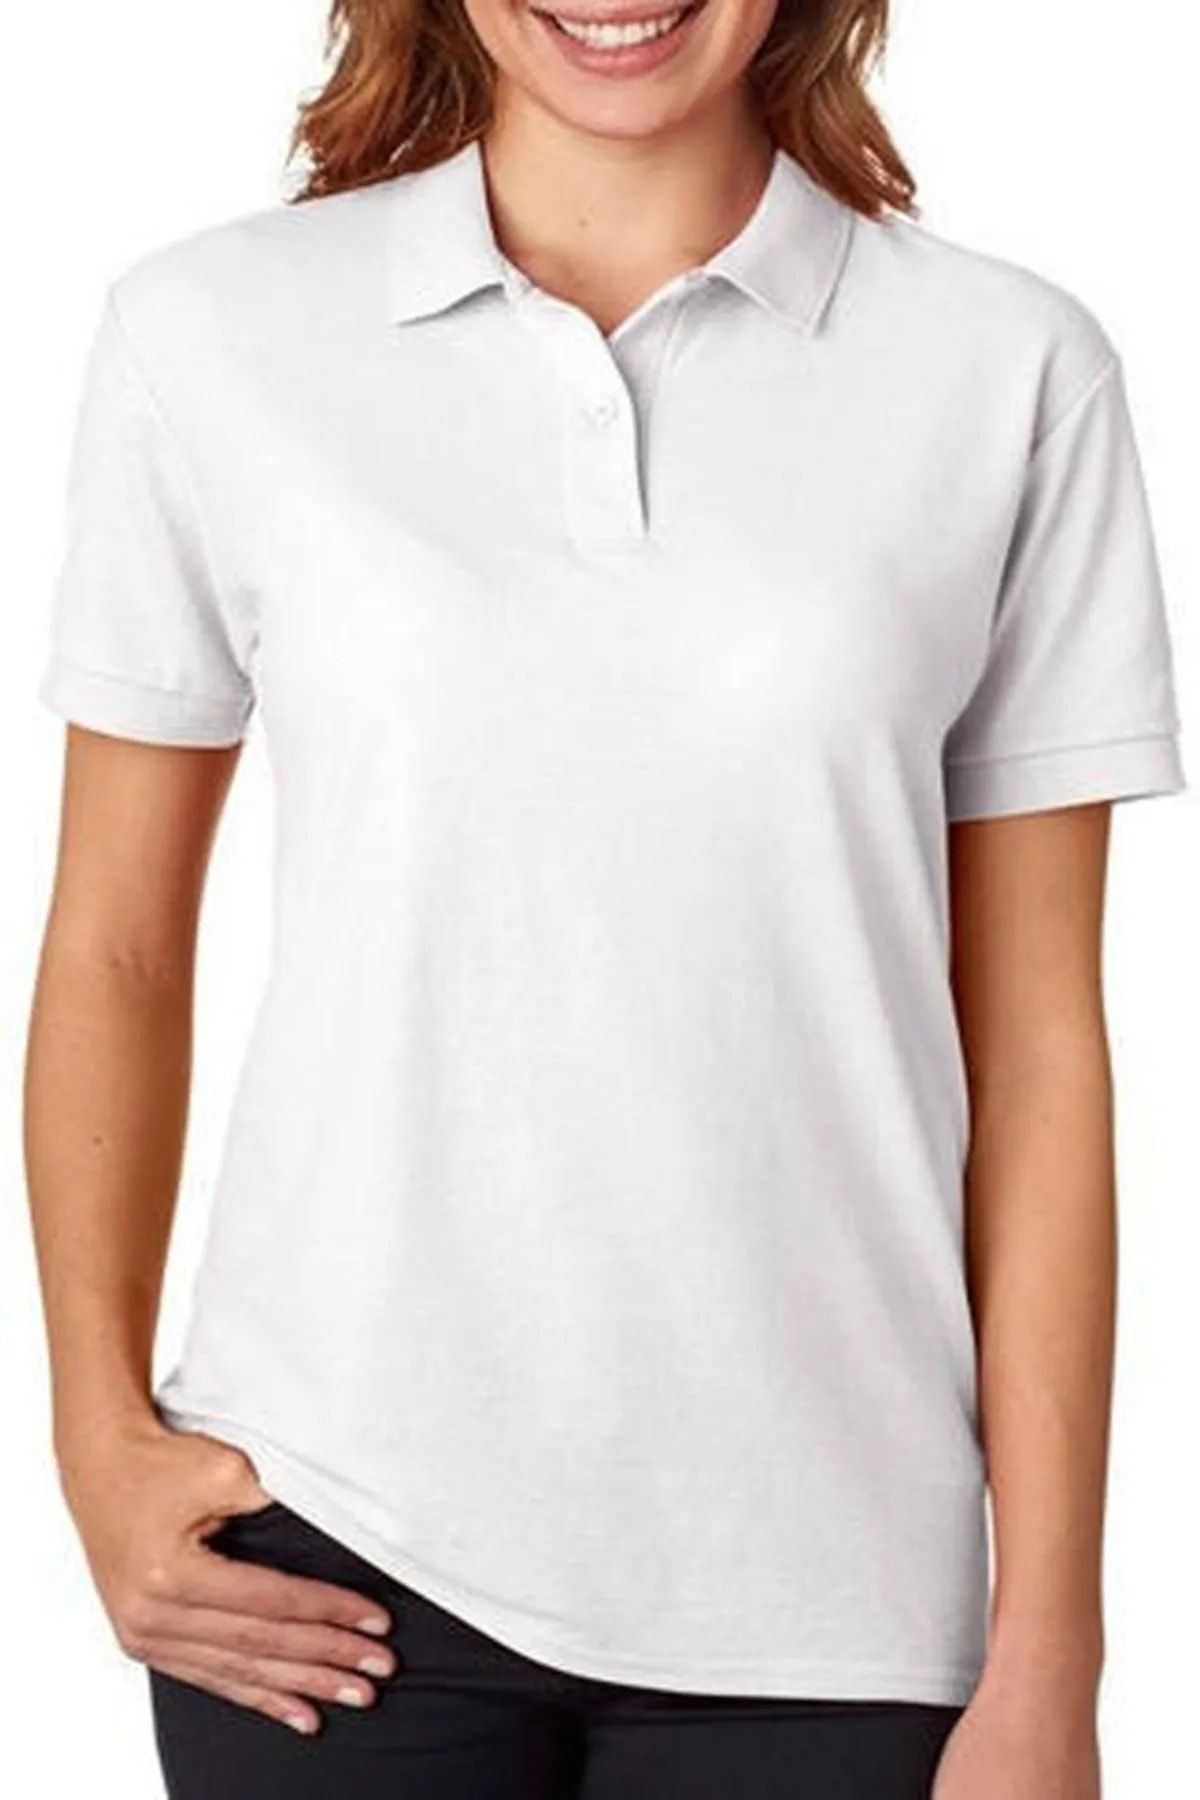 EKZMODA Ckm Mağazacılık polo Yaka Basic Örme Kadın Lakost T-shirt